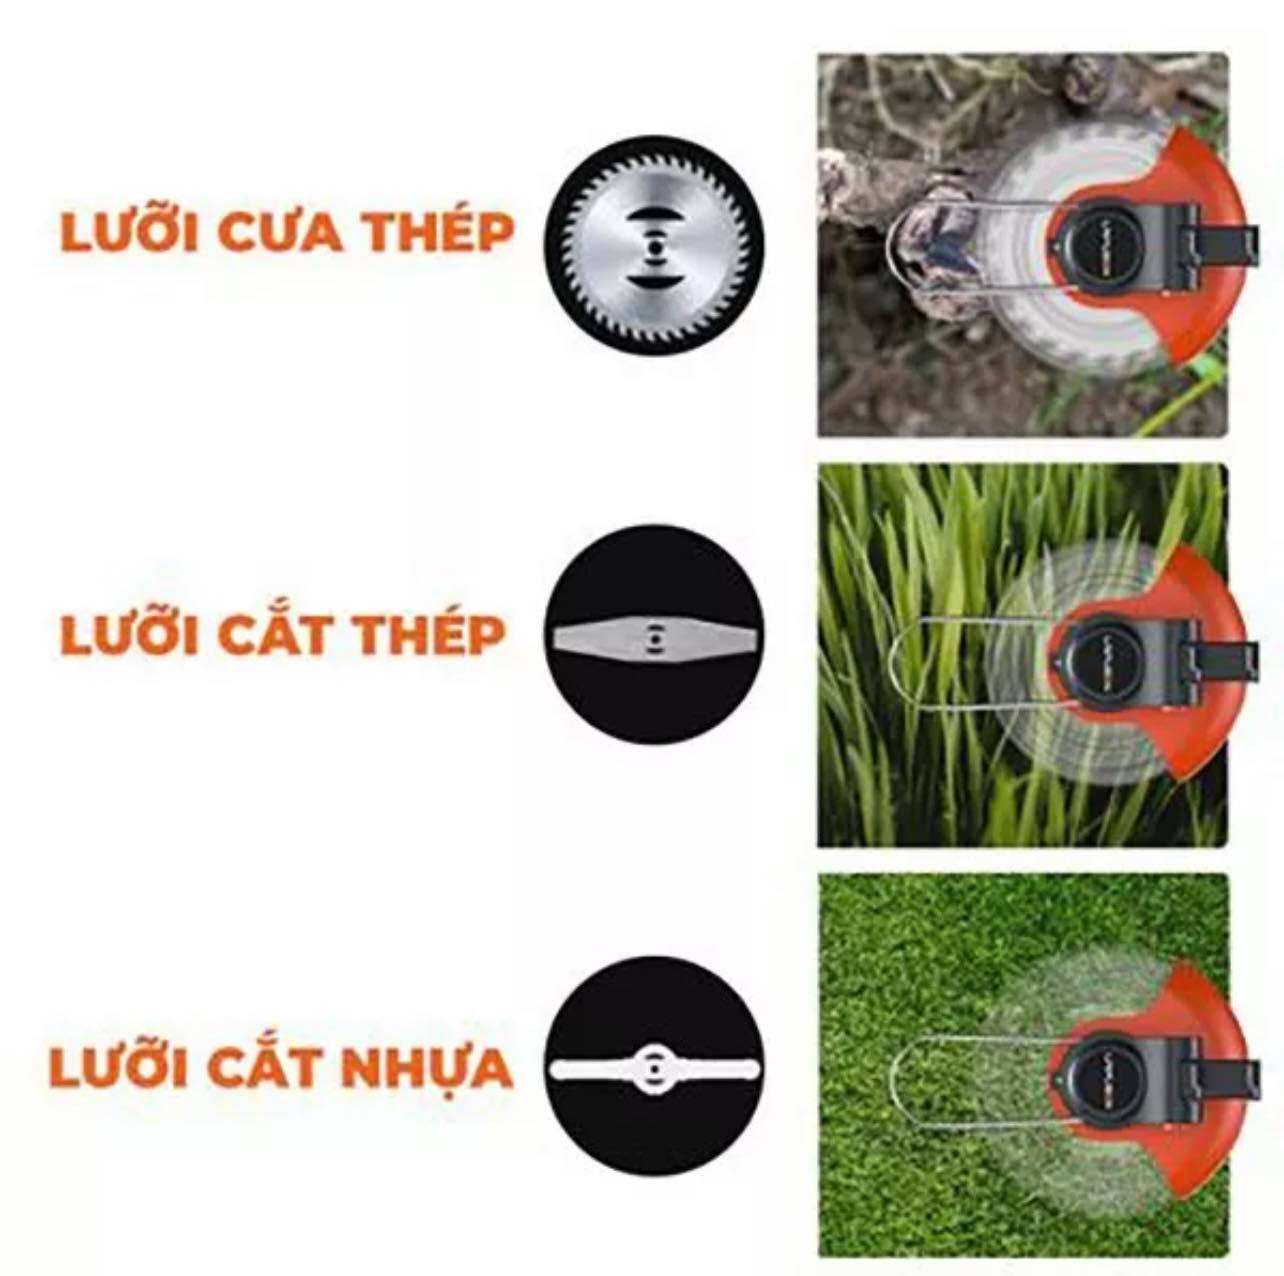 Máy cắt cỏ cầm tay dùng pin LAPUSE.N, LÕI ĐỒNG 100%  (bảo hành 12 tháng)